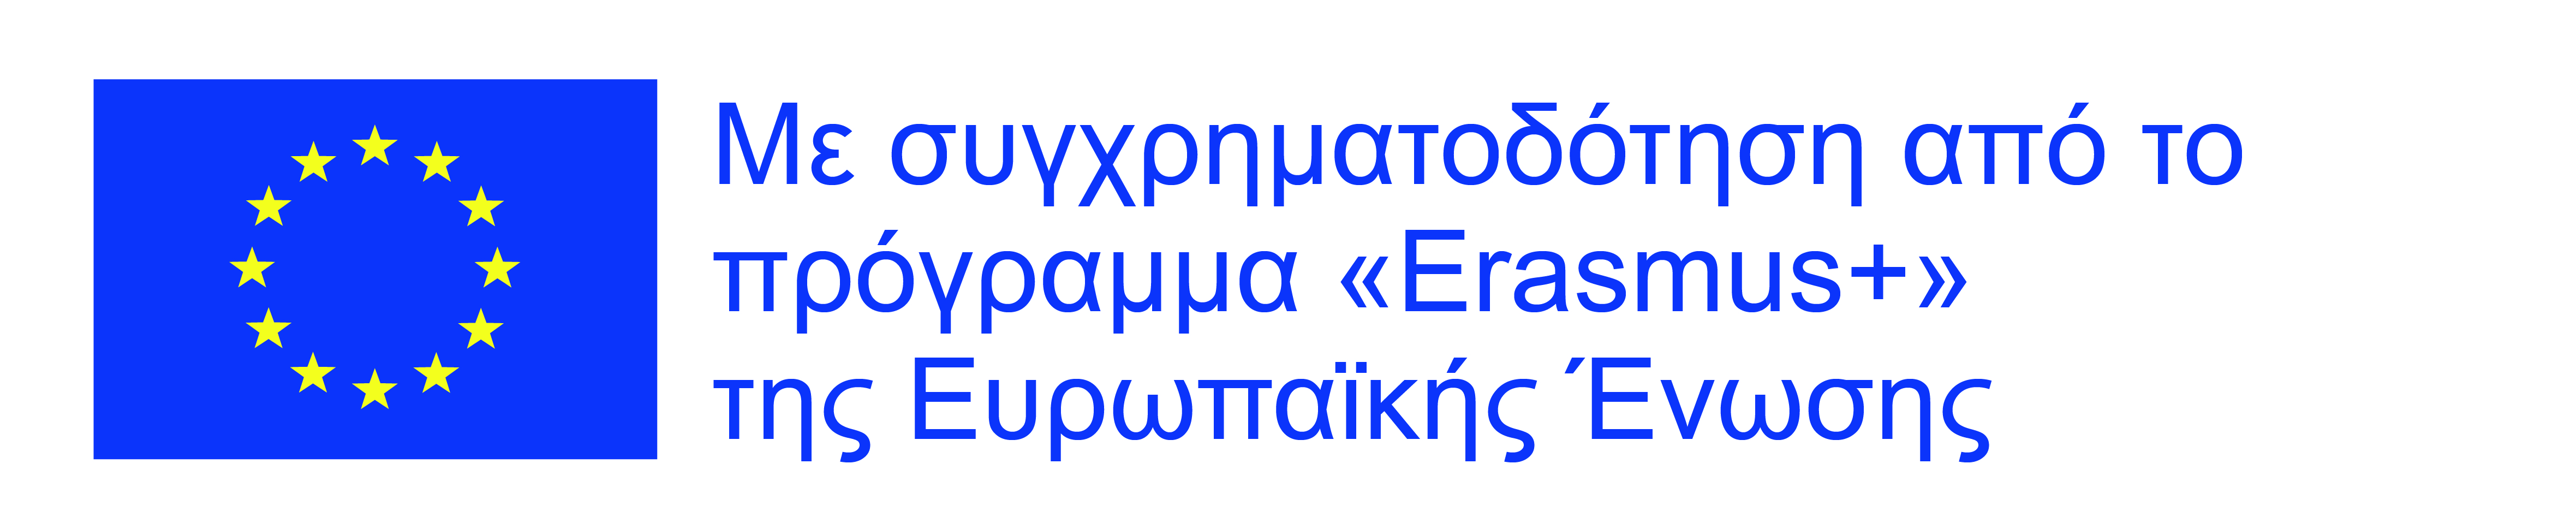 Erasmus_logo_Greek.jpg - 1,25 MB